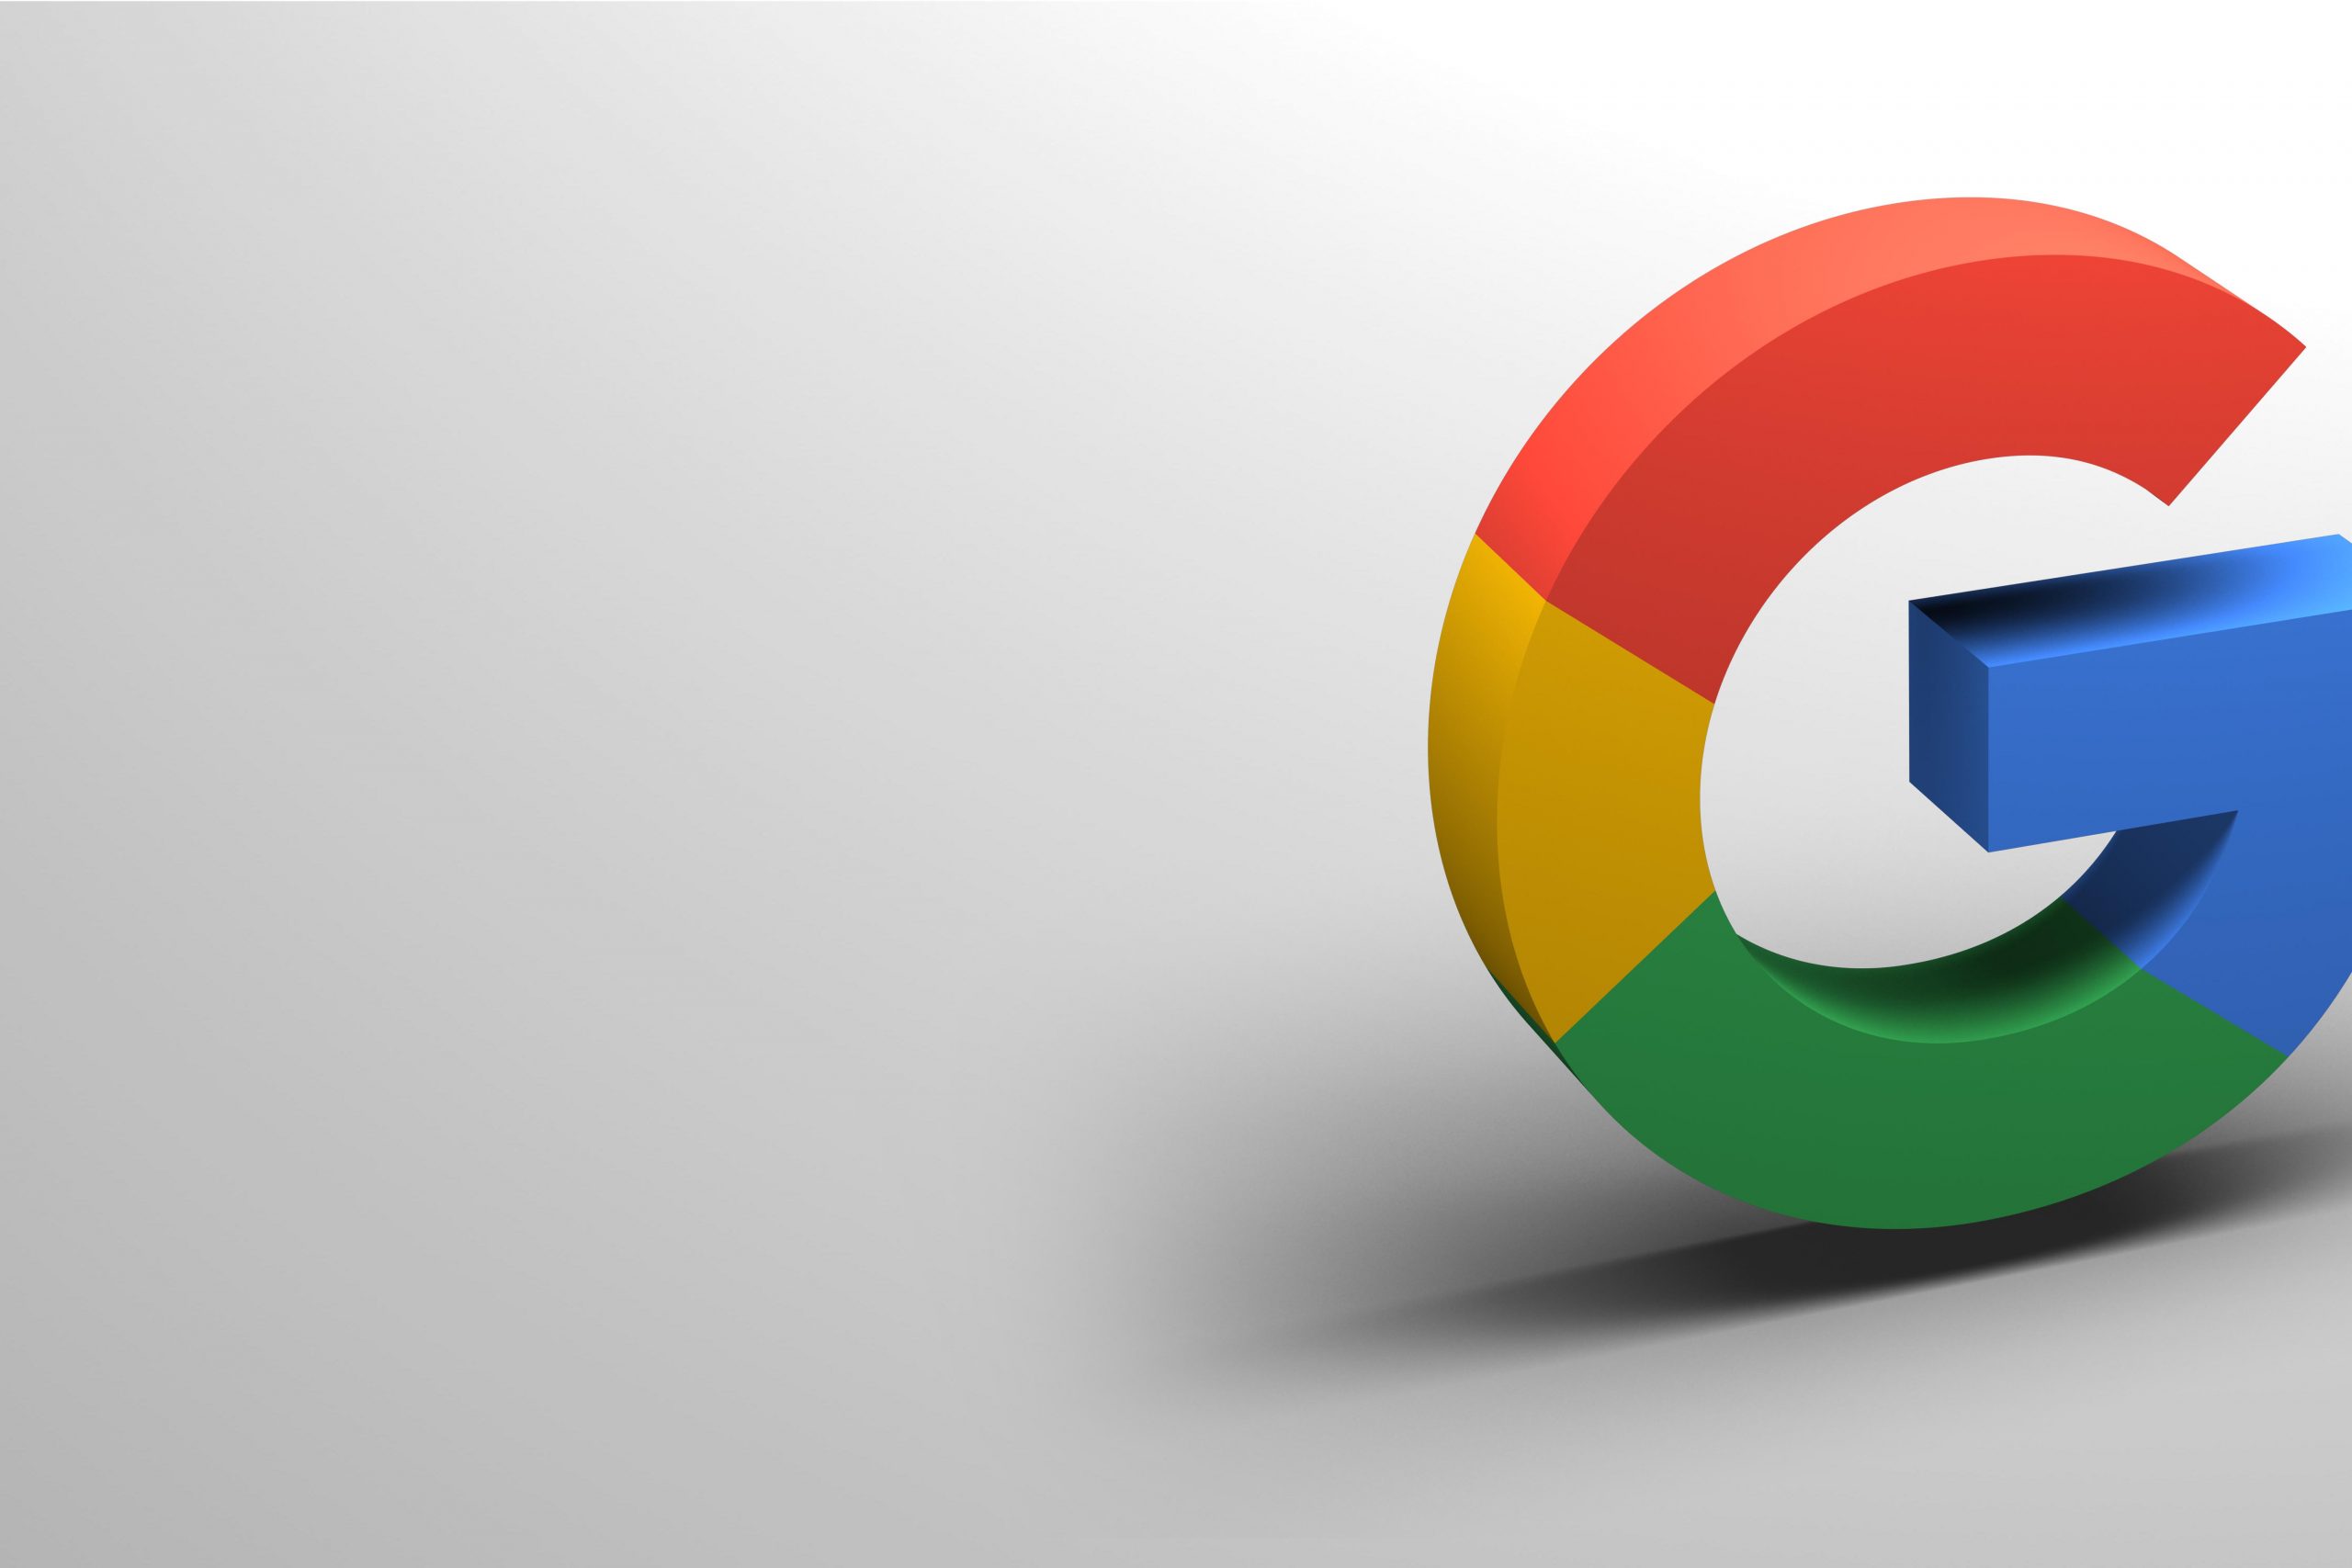 Chrome chega à versão 100 com novo ícone após 8 anos; veja mais novidades